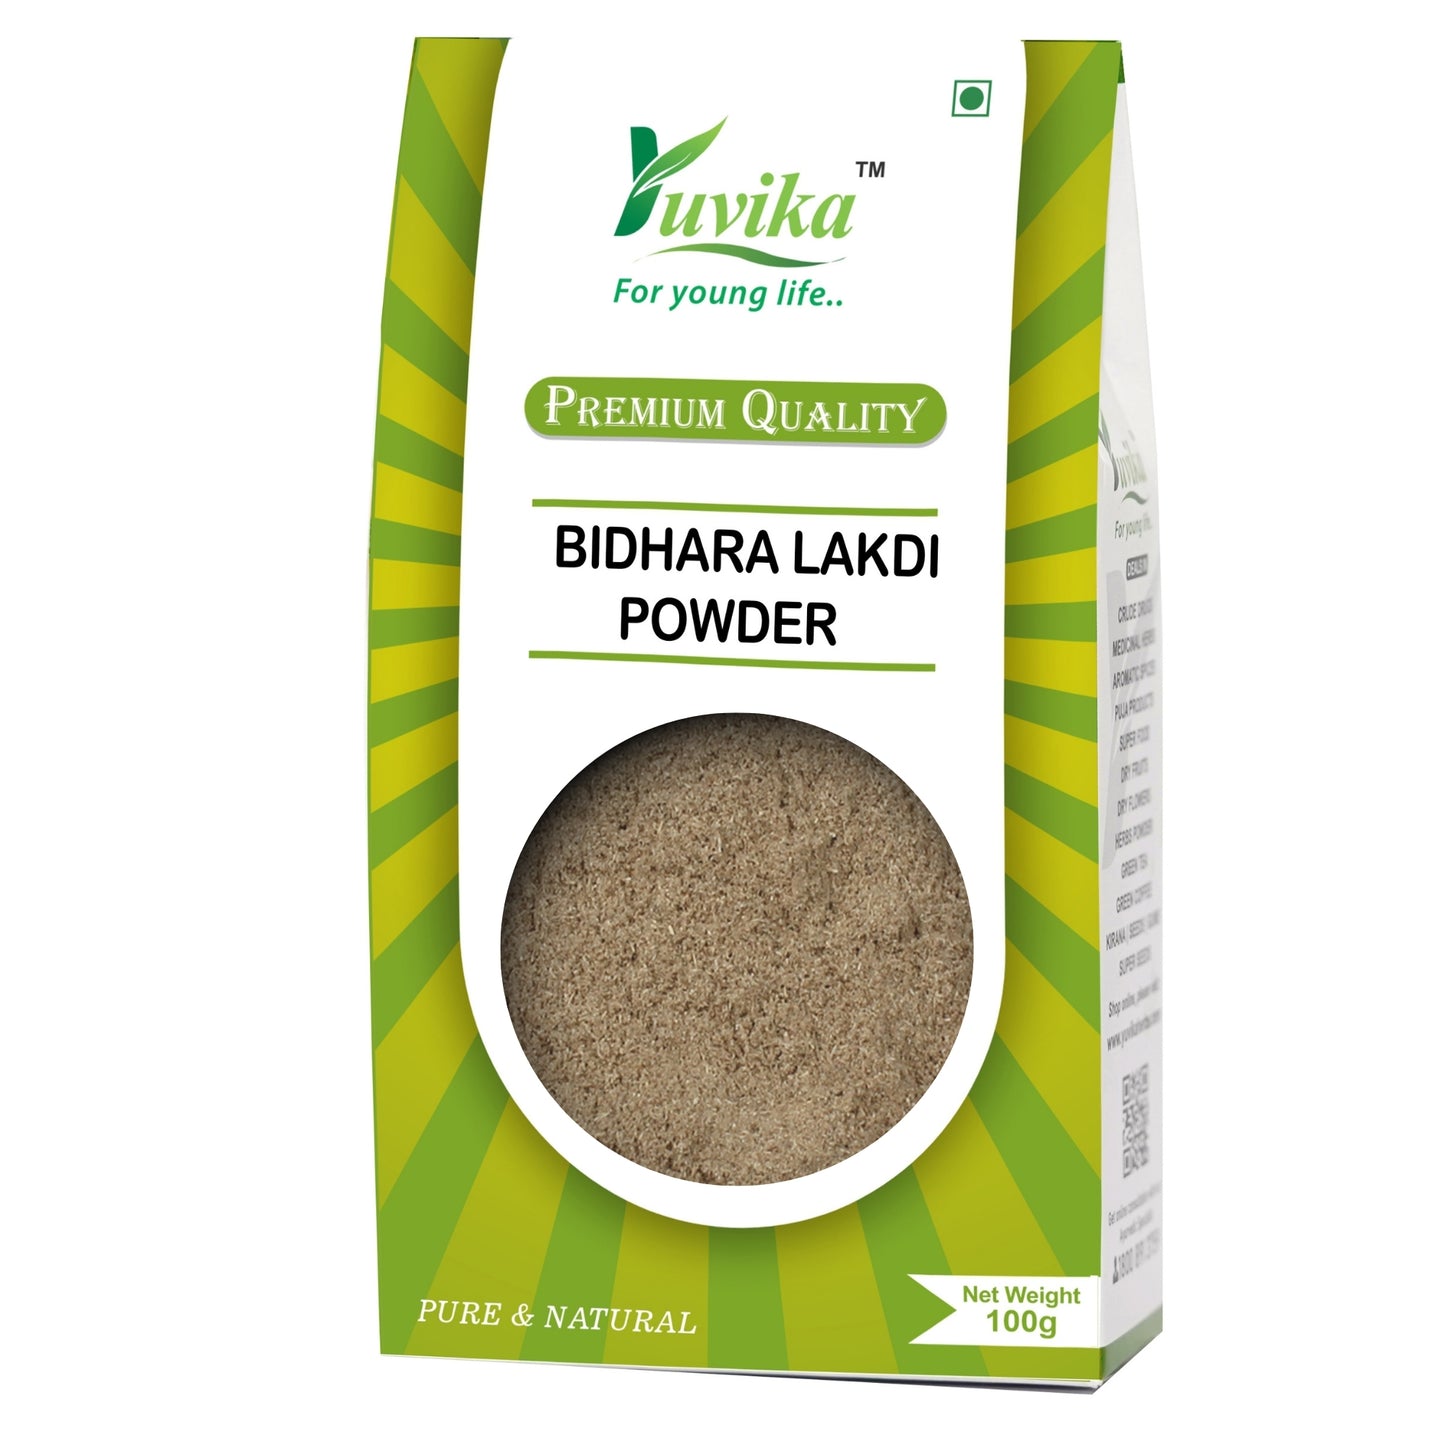 Bidhara Lakdi Powder - Vidhara Powder - Argyreia Nervosa (100g)